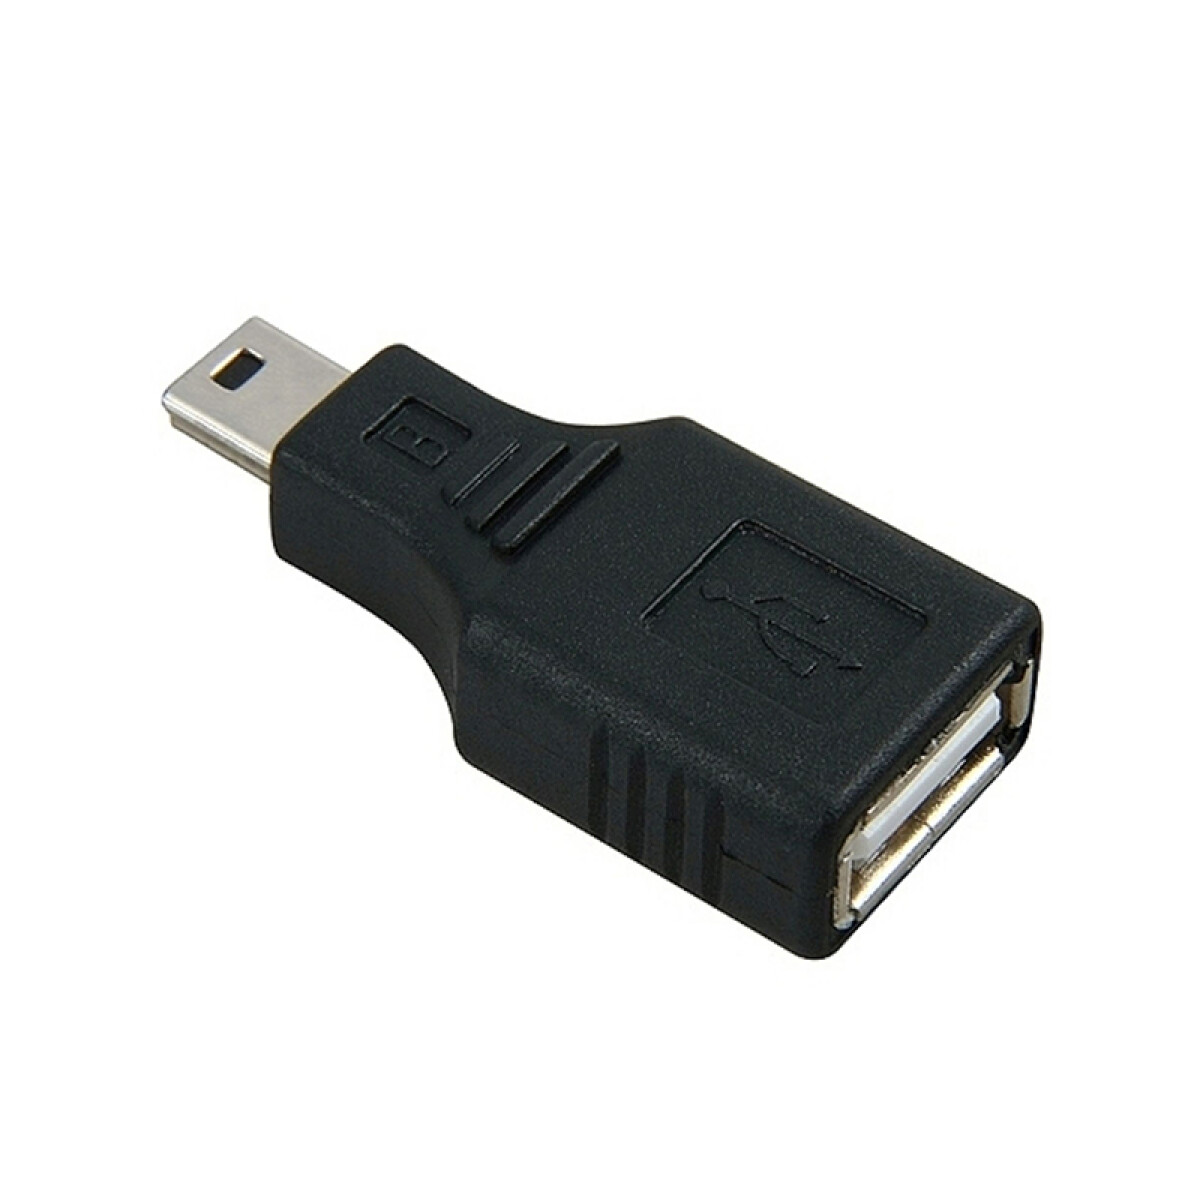 Adaptador Pin USB a mini USB Hembra Macho 